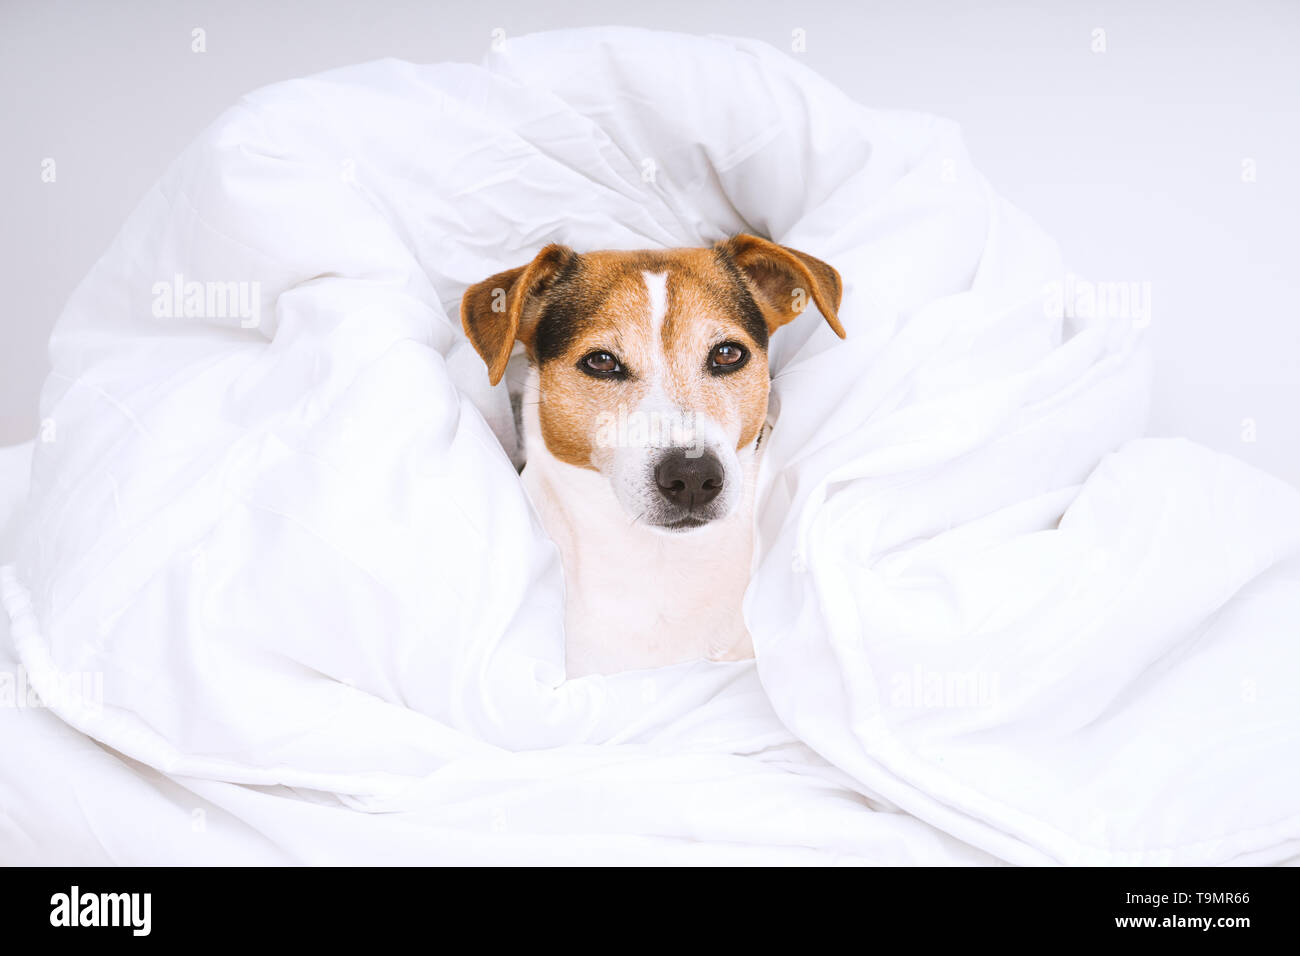 Portrait de mignon chien Jack Russell enveloppée de blanc et à la recherche à l'appareil photo. Routine d'entretien ménager et de blanchisserie concept Banque D'Images